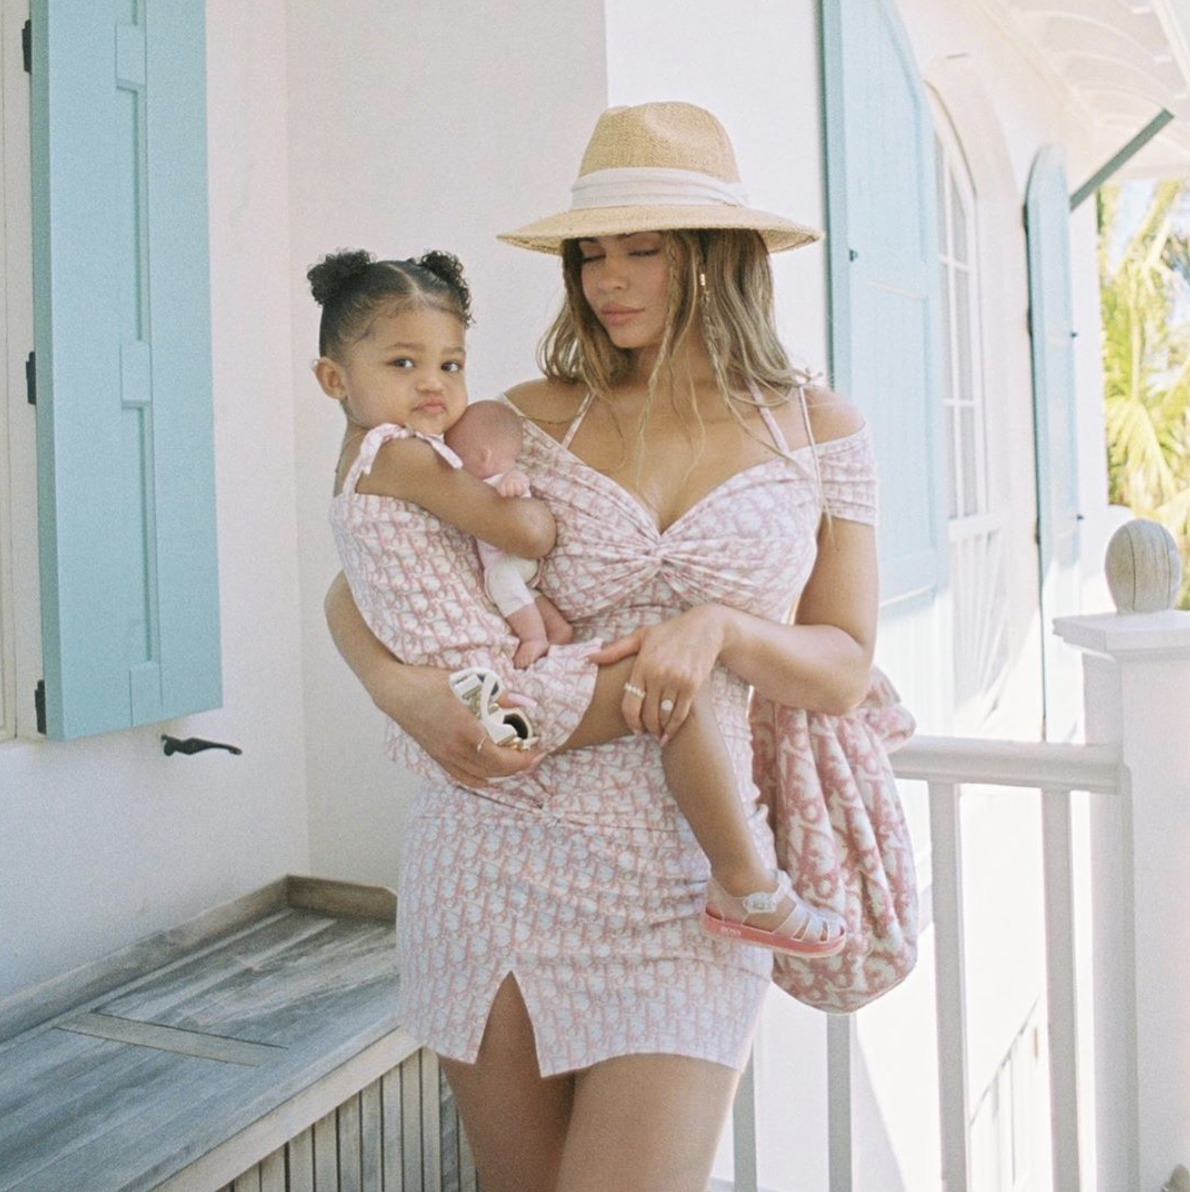 Kylie Jenner chuẩn bị ra mắt dòng sản phẩm thời trang, đồ dưỡng da dành cho em bé. Dự kiện con gái cô và một vài người anh chị em họ sẽ trở thành người mẫu quảng cáo cho thương hiệu.